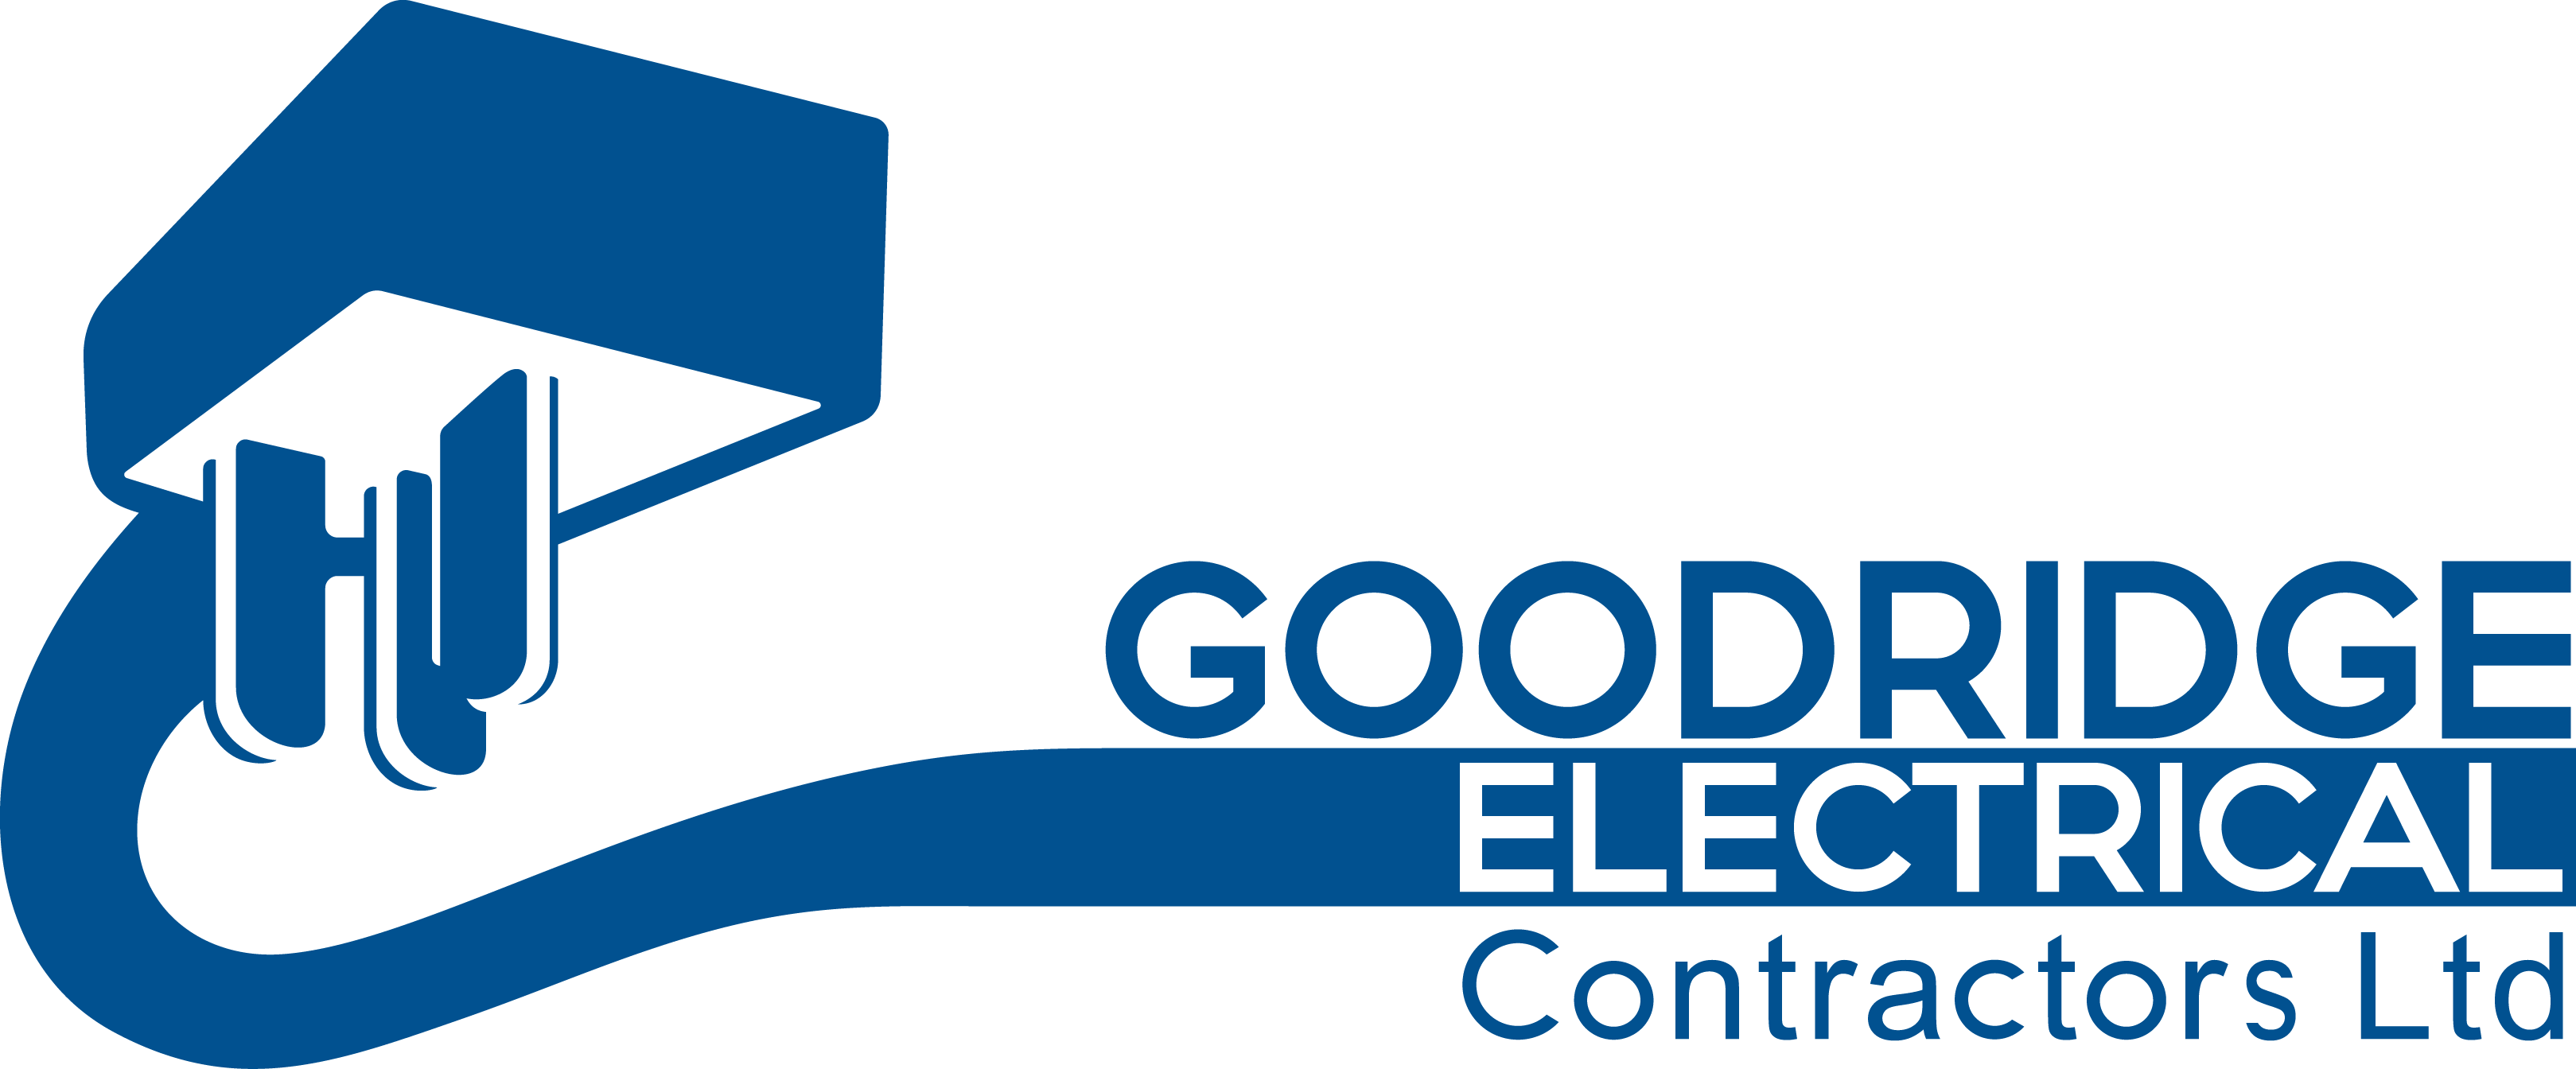 Goodridge Electrical Contractors Ltd - Company Registered in England & Wales No: 10511532 | VAT Reg. No. 256 7164 84